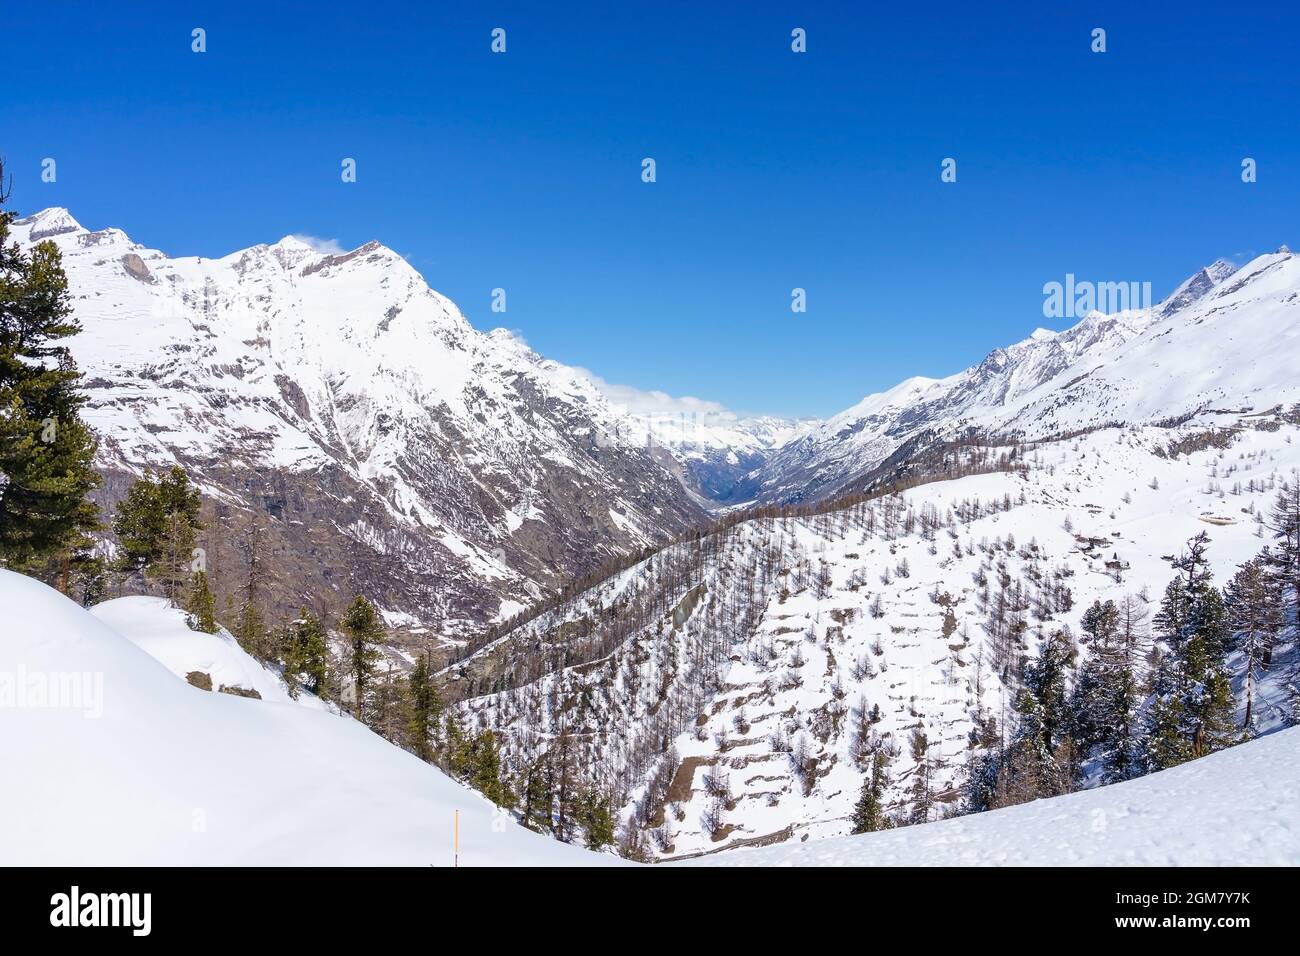 Single backcountry Skier in einem weiten Berglandschaft auf dem Weg von einem hohen Gipfel mit einem tollen Blick auf das Matterhorn und die umliegenden Berge. Stockfoto